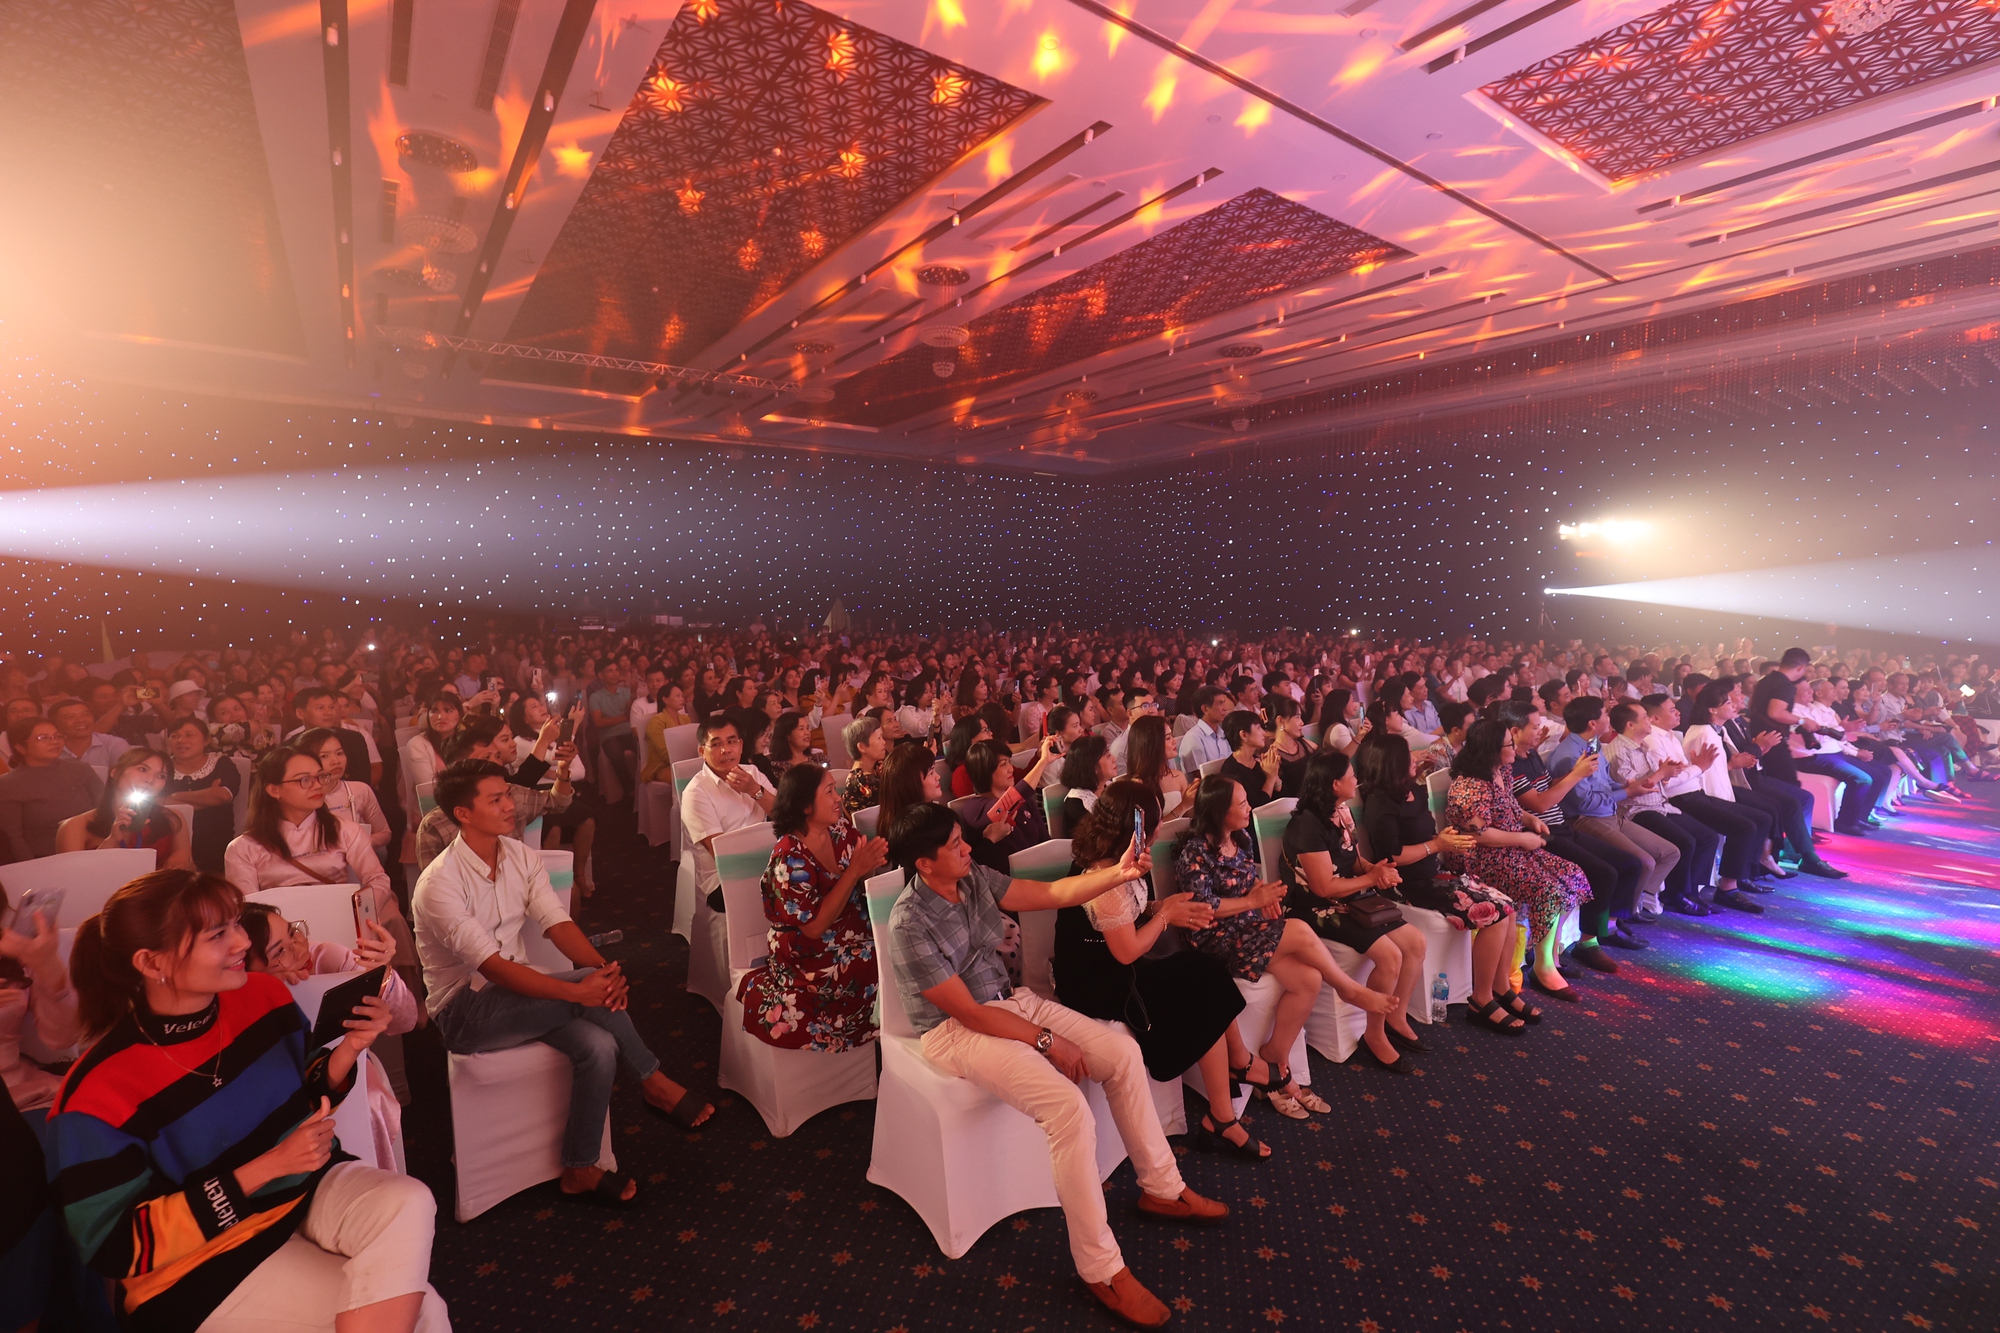 Bảo Việt Nhân thọ trao giải thưởng gần 1 tỷ đồng cho khách hàng - Ảnh 1.